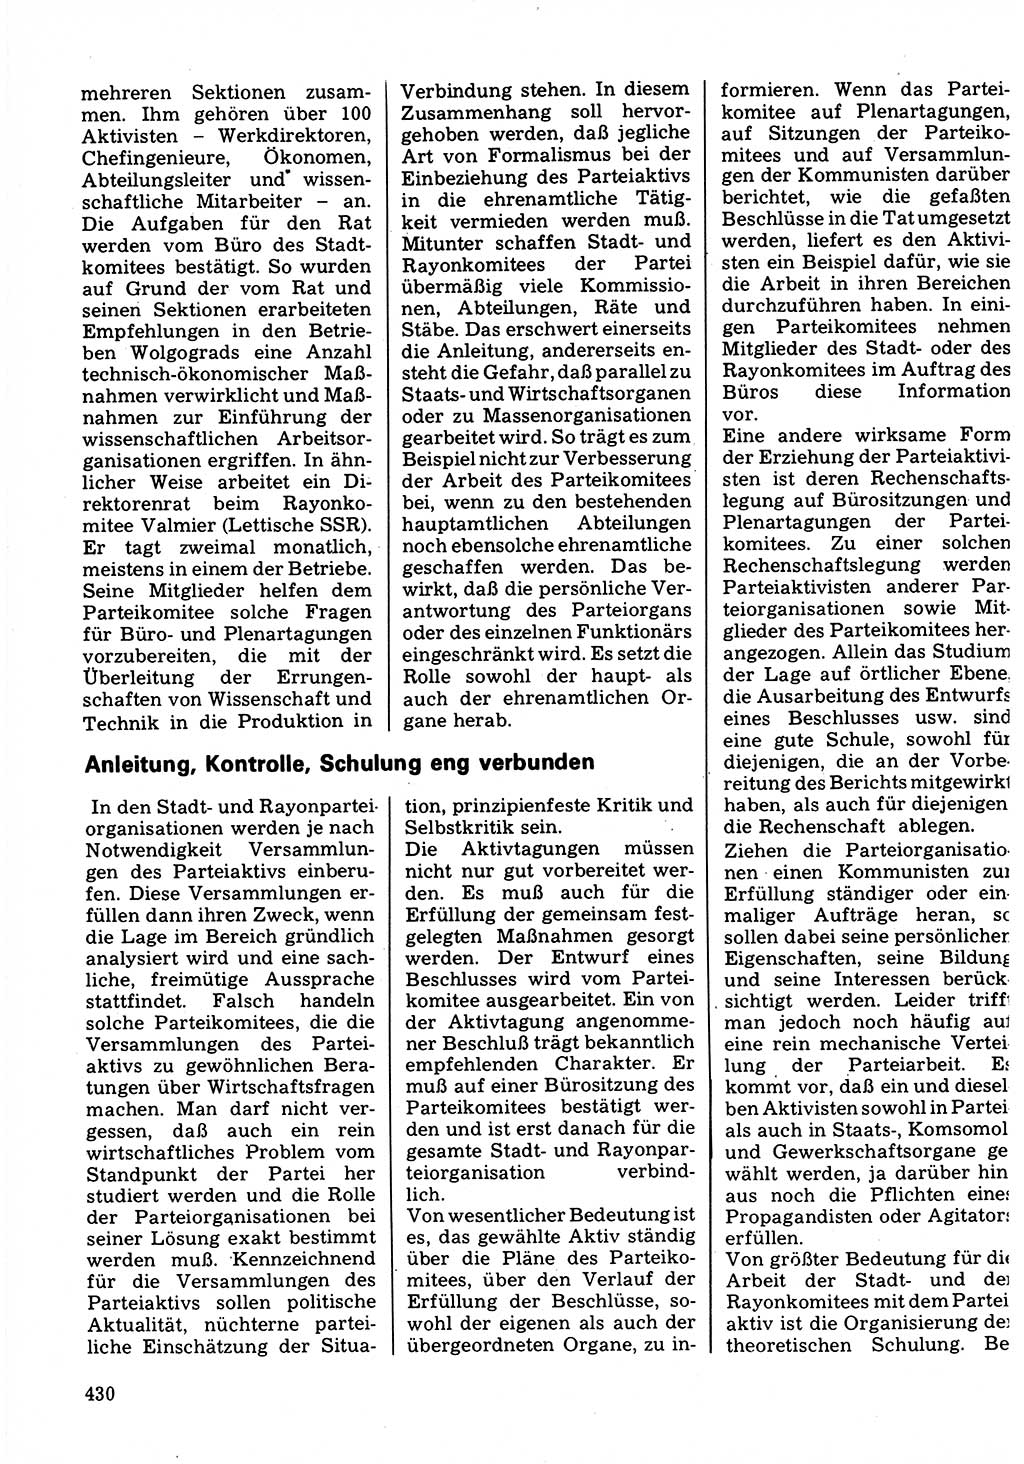 Neuer Weg (NW), Organ des Zentralkomitees (ZK) der SED (Sozialistische Einheitspartei Deutschlands) für Fragen des Parteilebens, 32. Jahrgang [Deutsche Demokratische Republik (DDR)] 1977, Seite 430 (NW ZK SED DDR 1977, S. 430)